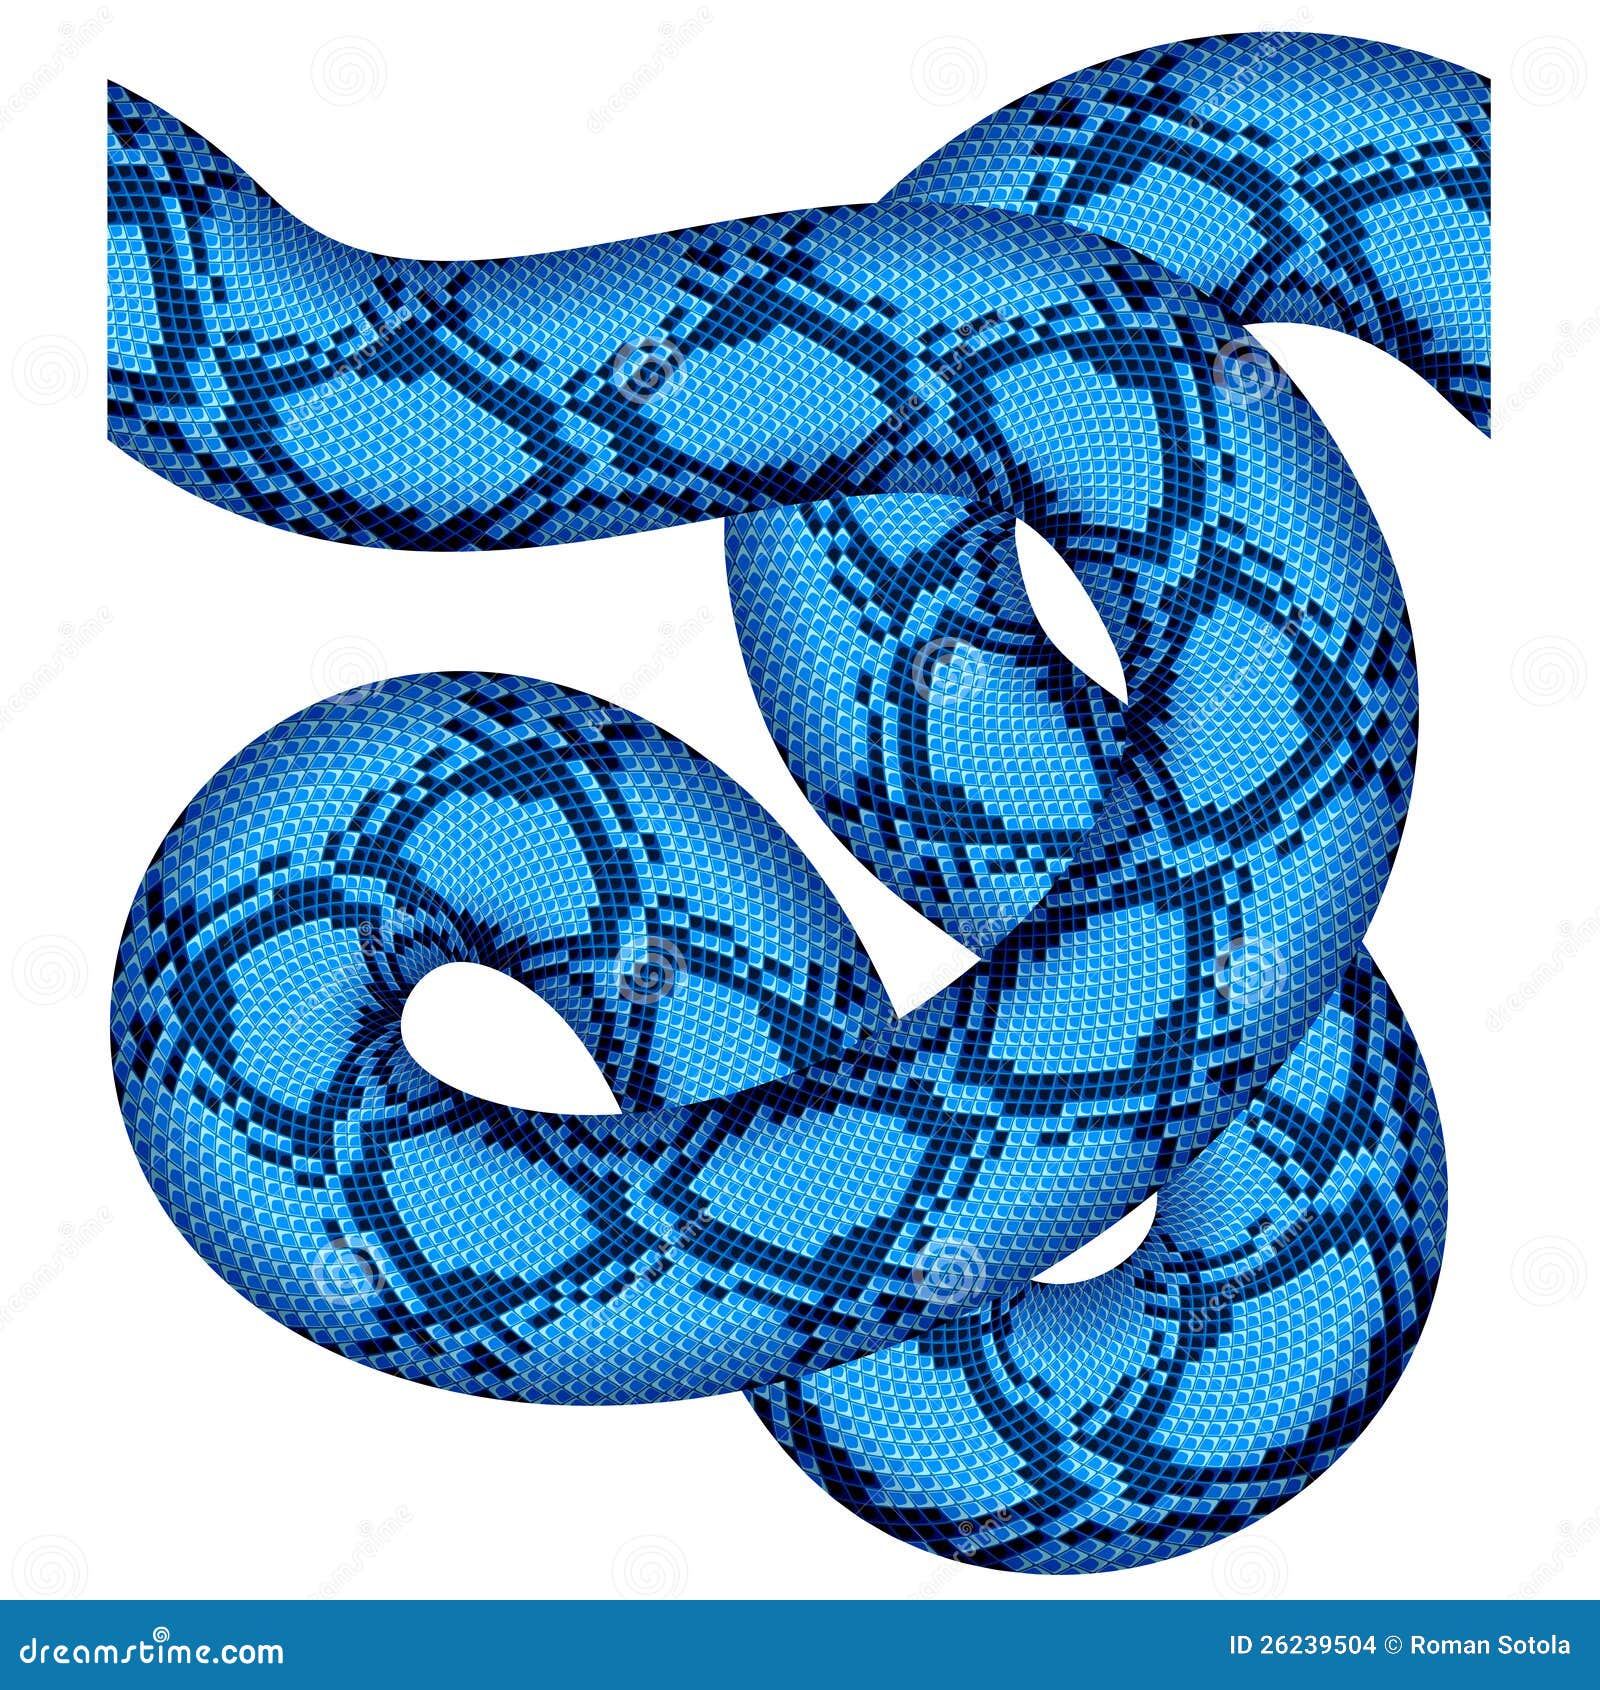 Про синюю змею. Синяя змея. Голубой питон. Змея на прозрачном фоне. Змея с прозрачным фоном синяя.